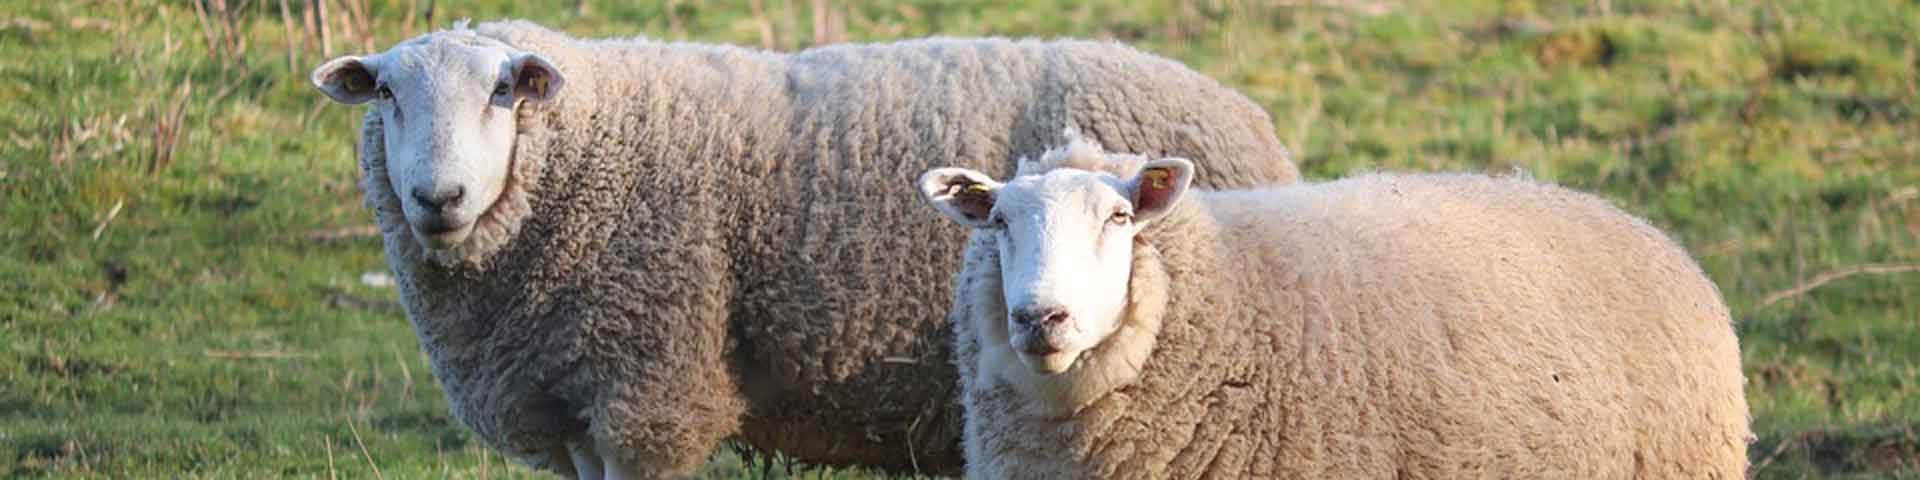 schapen-1920x480